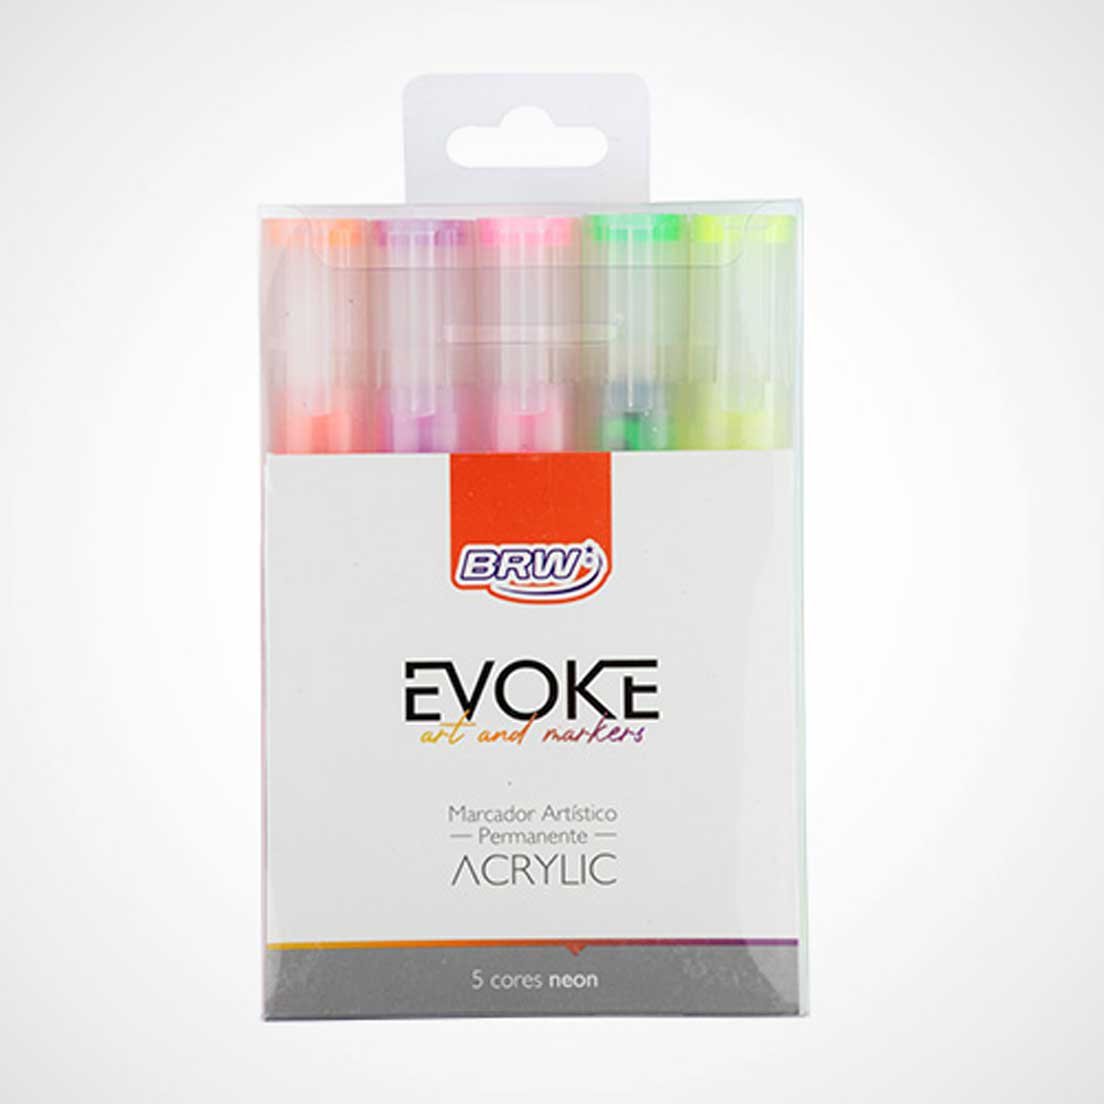 Marcador Artístico Permanente Acrylic 5 Cores Neon Brw Evoke